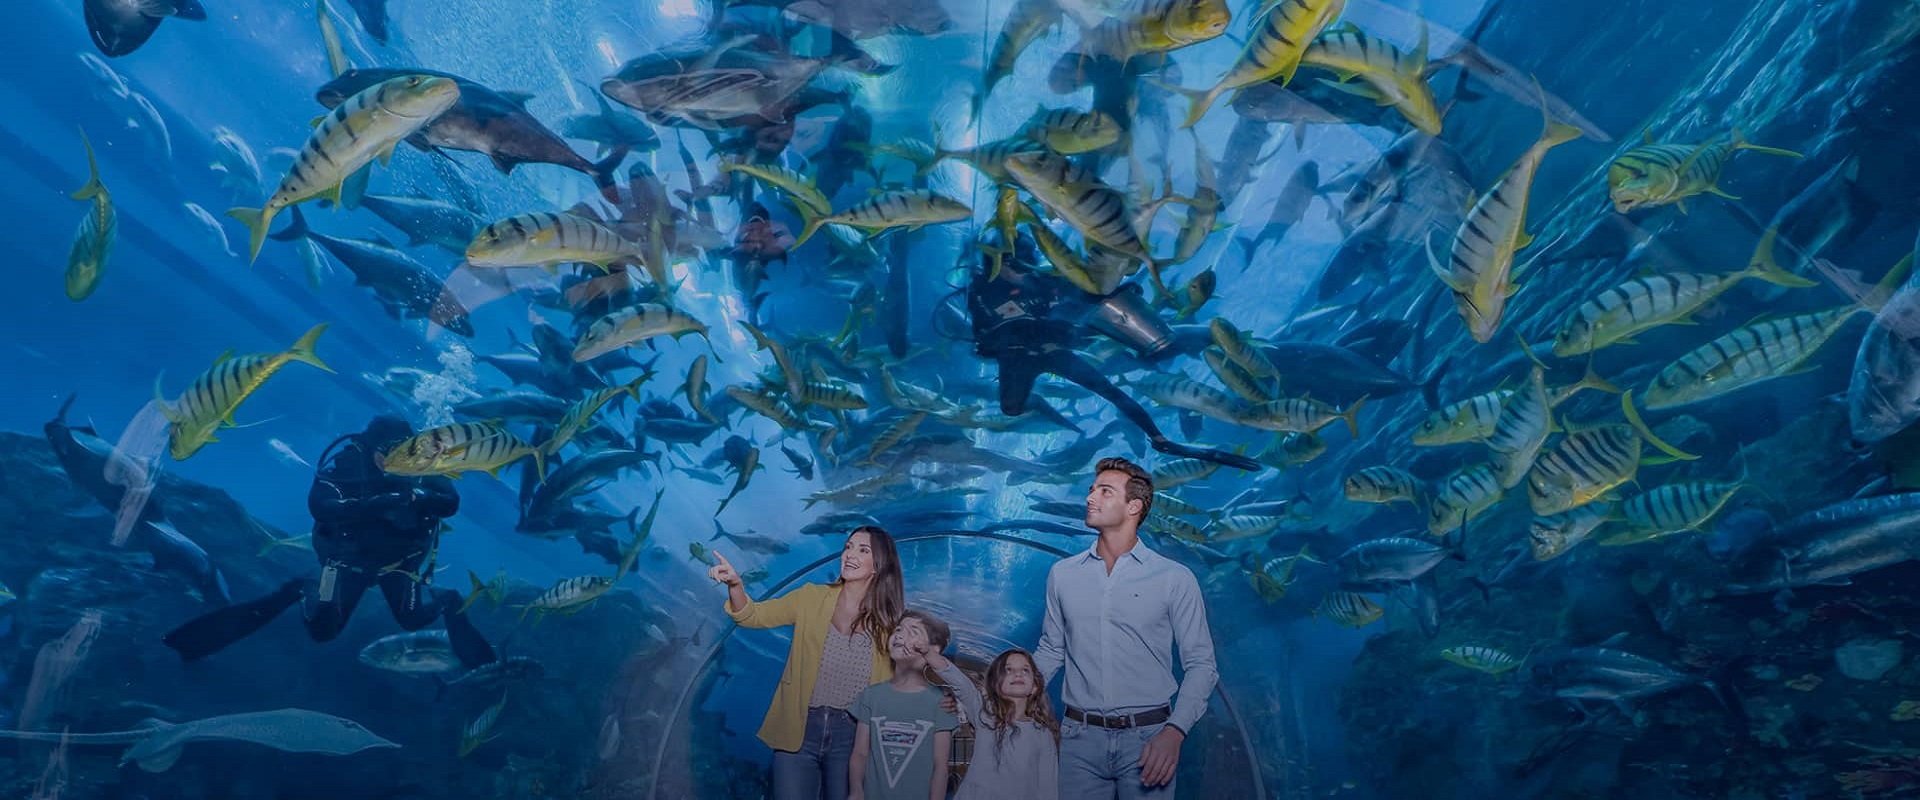 Dubai Mall Aquarium And Underwater Zoo